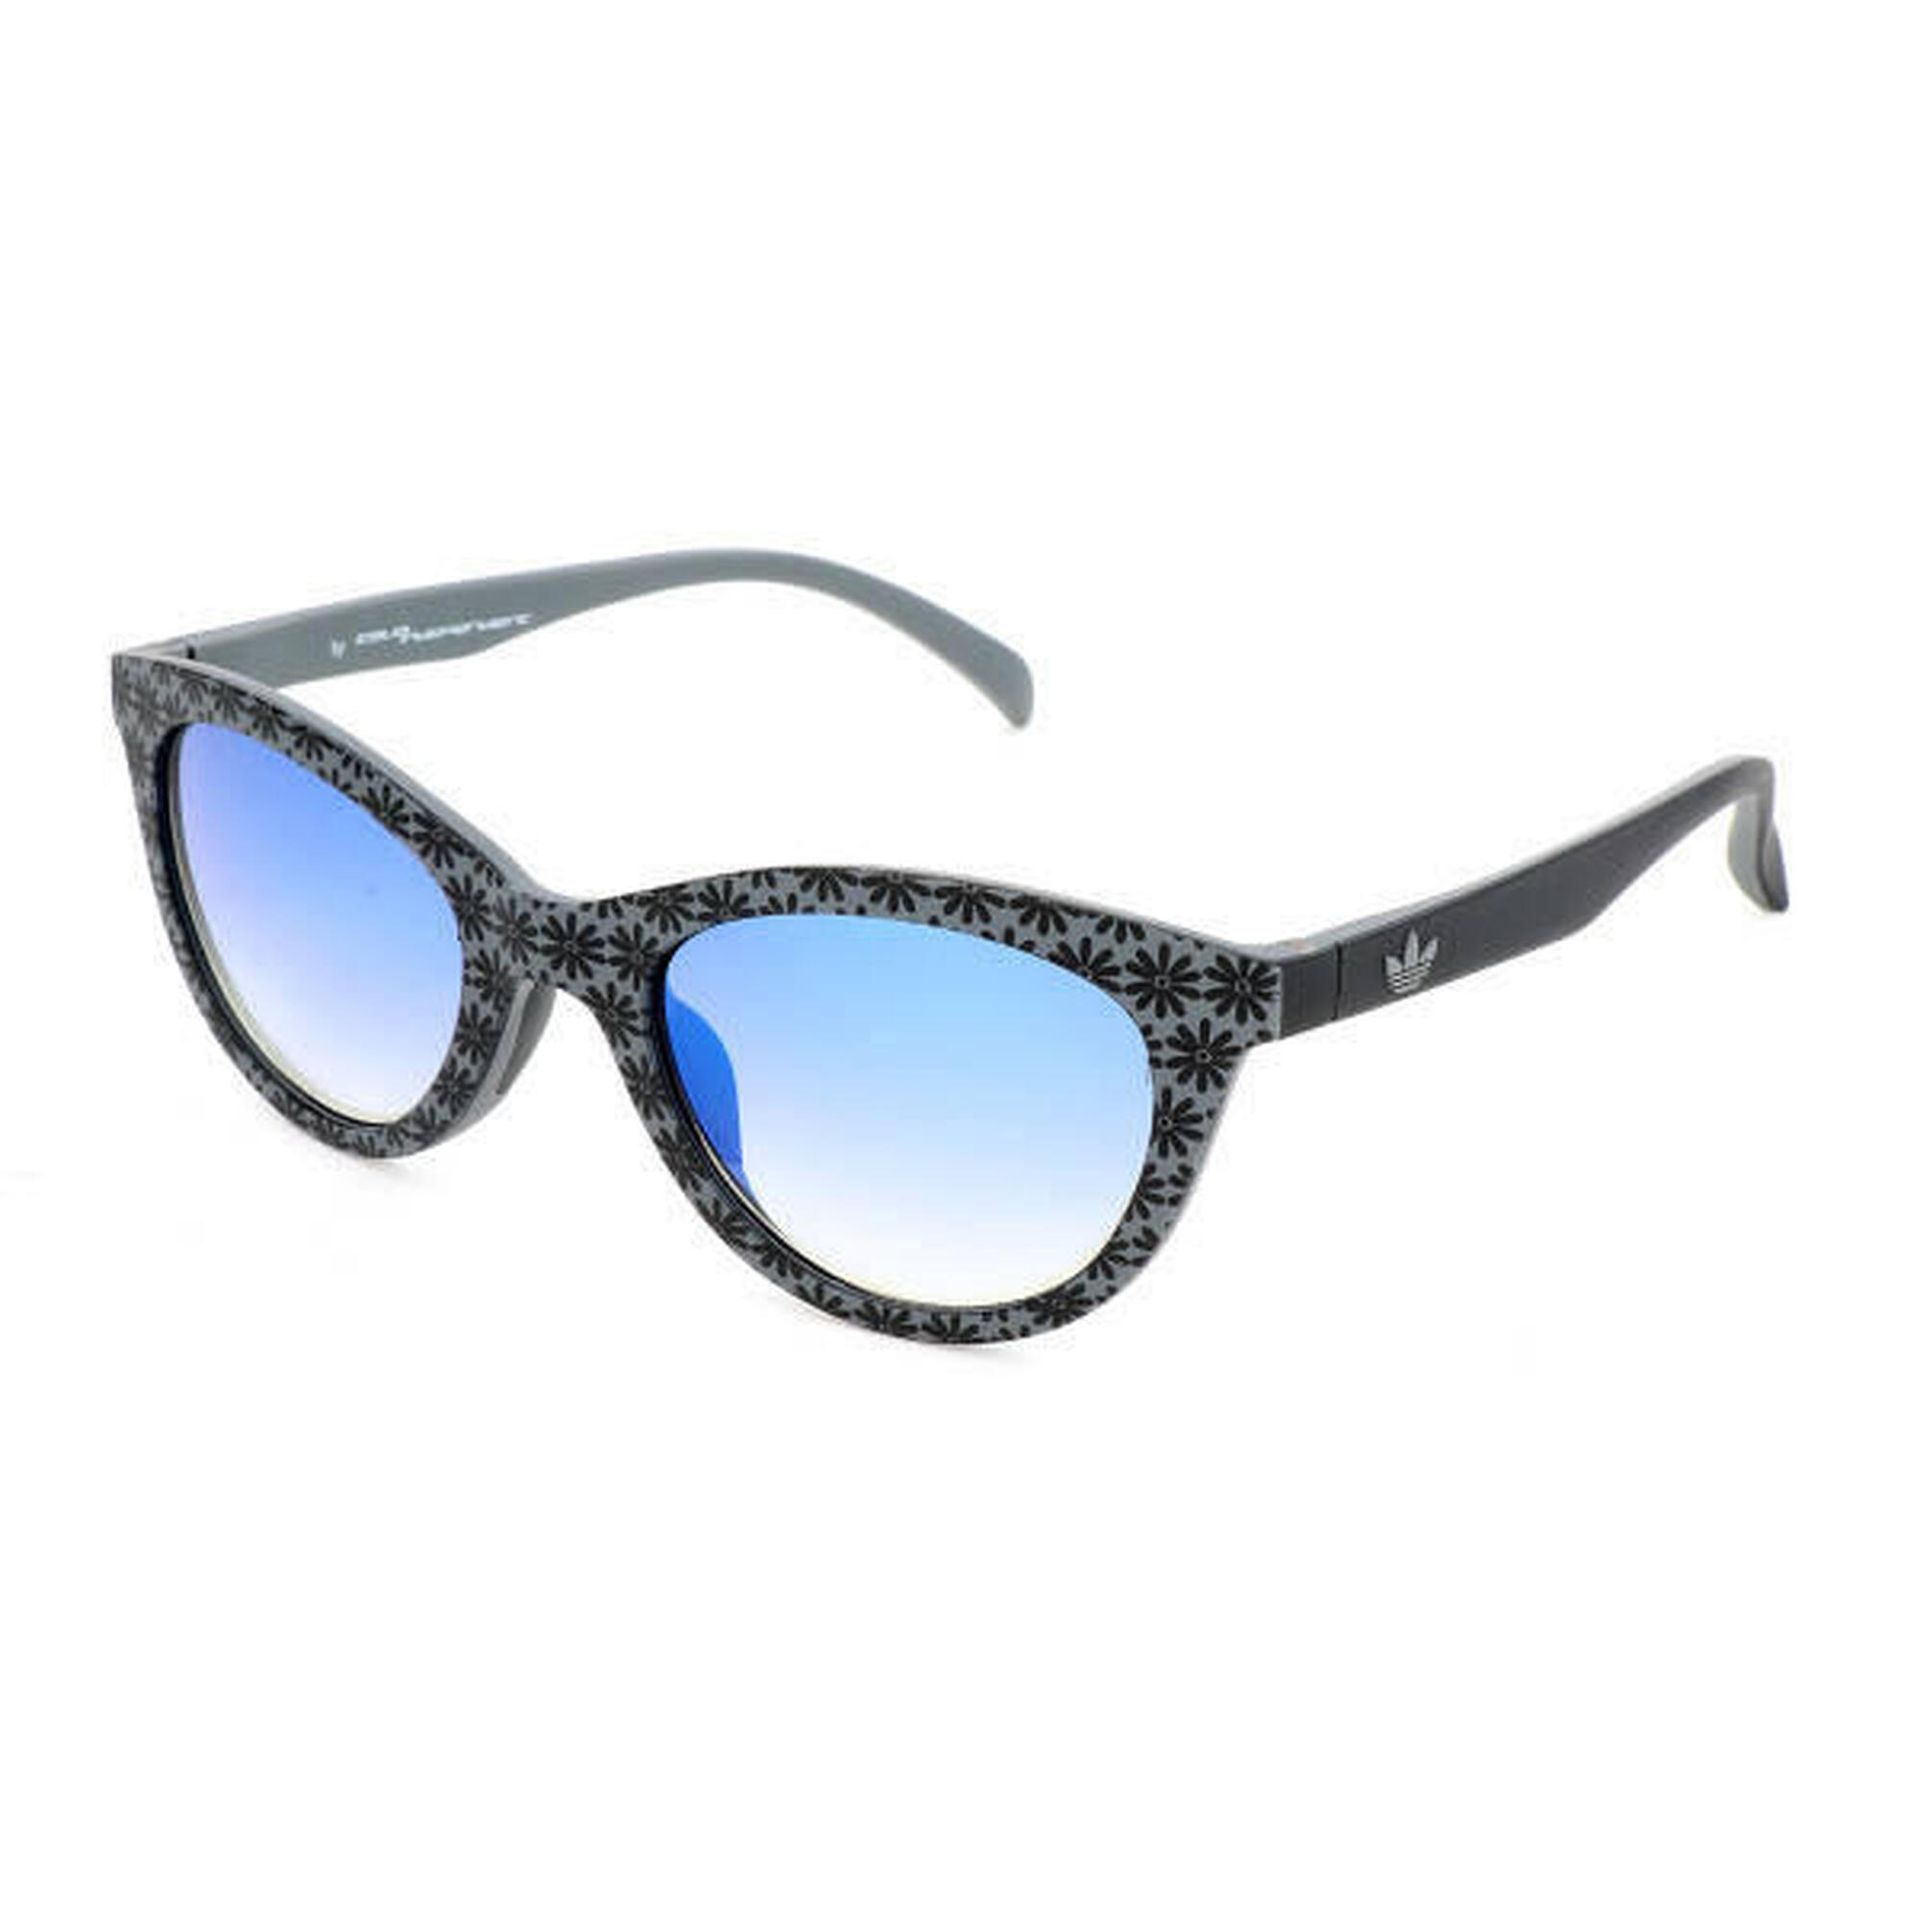 Okulary przeciwsłoneczne damskie Adidas Originals Sonnenbrille szare